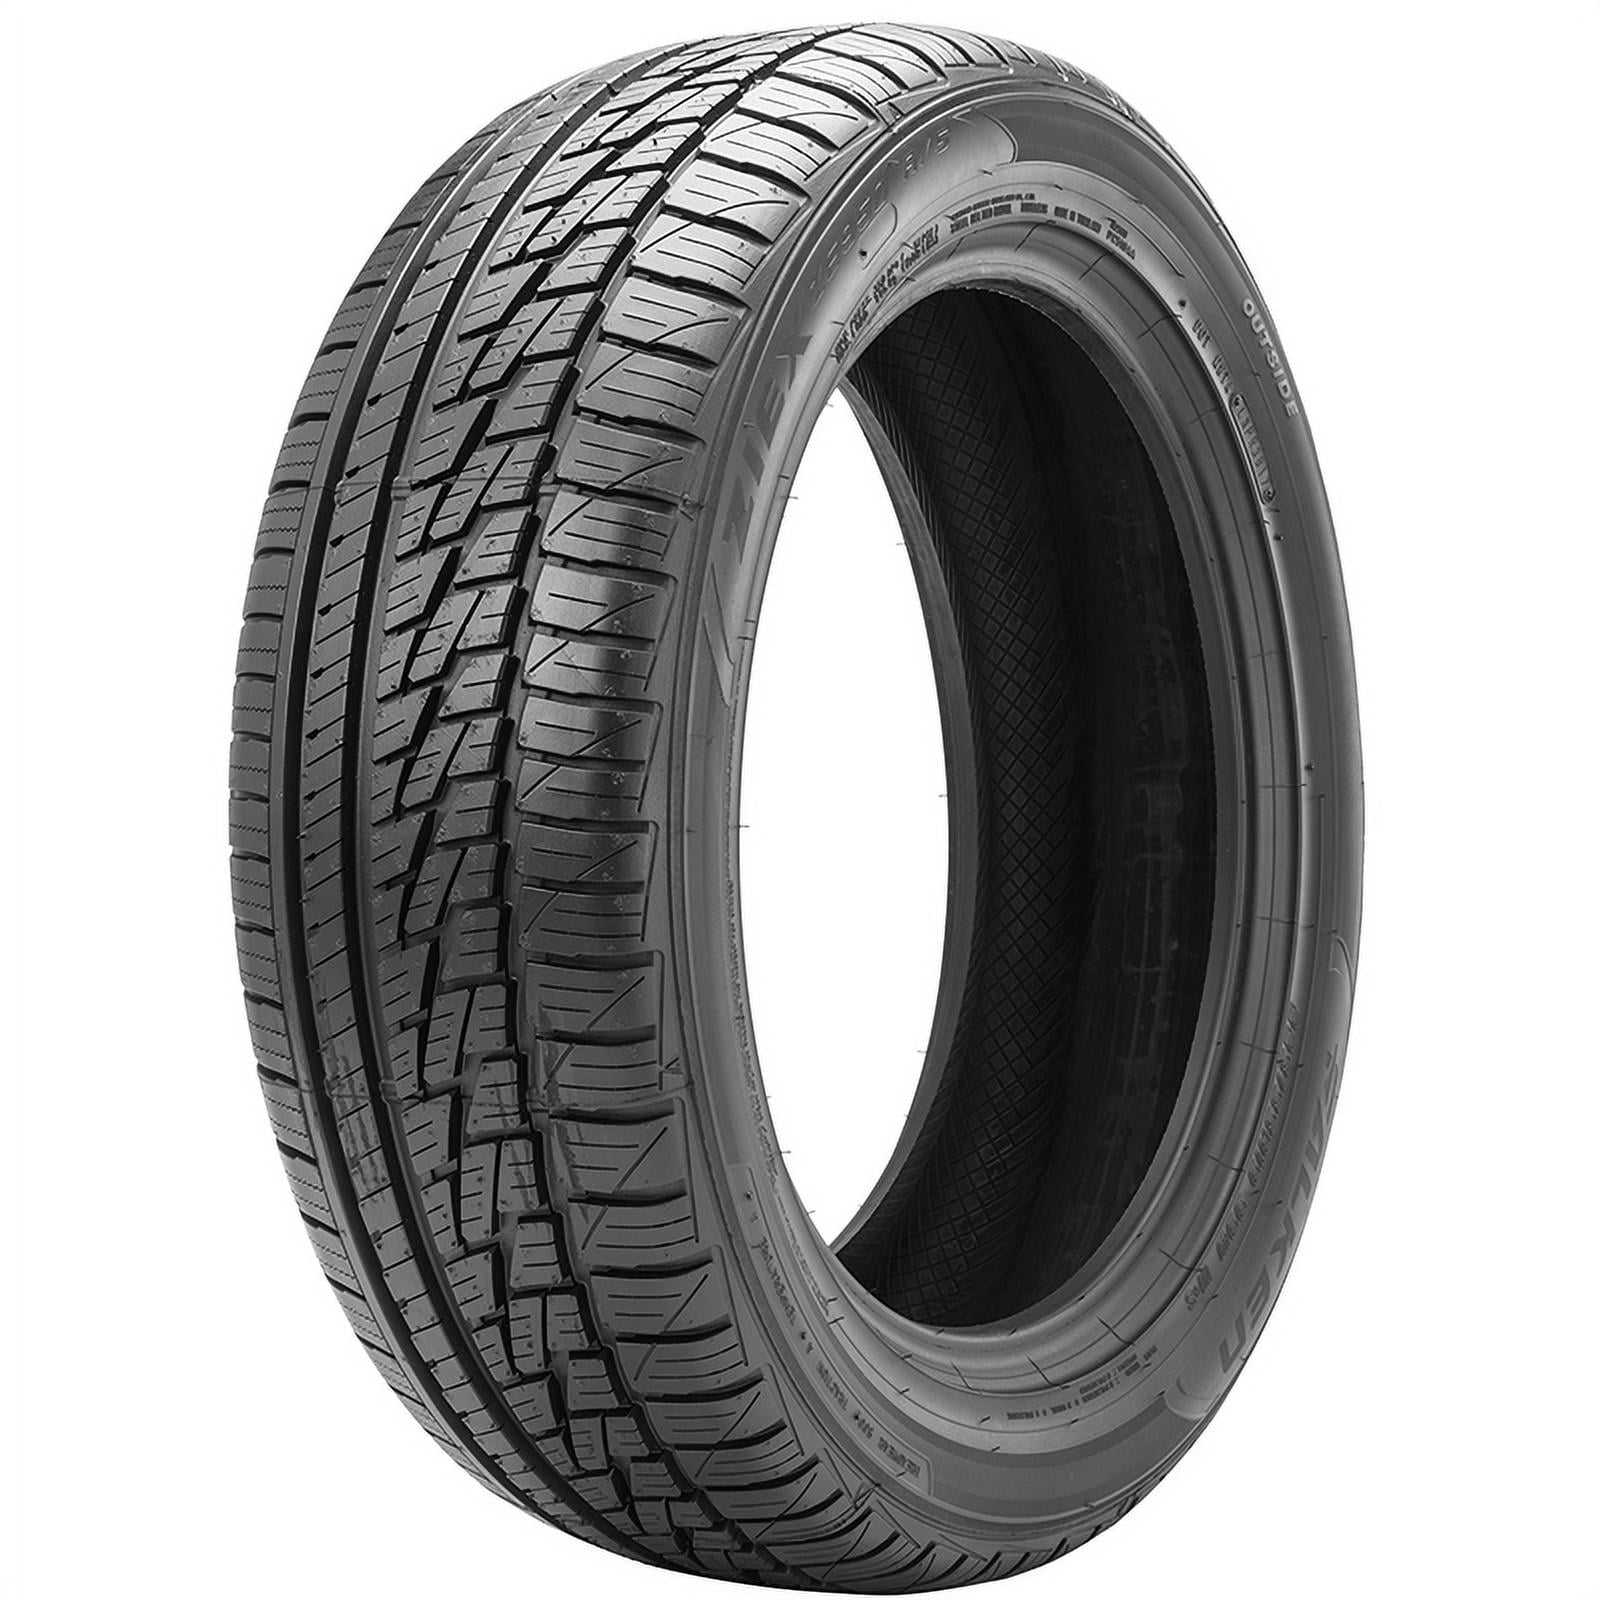 Falken Ziex ZE950 A/S 215/45R17 91W XL All-Season High Performance Tire